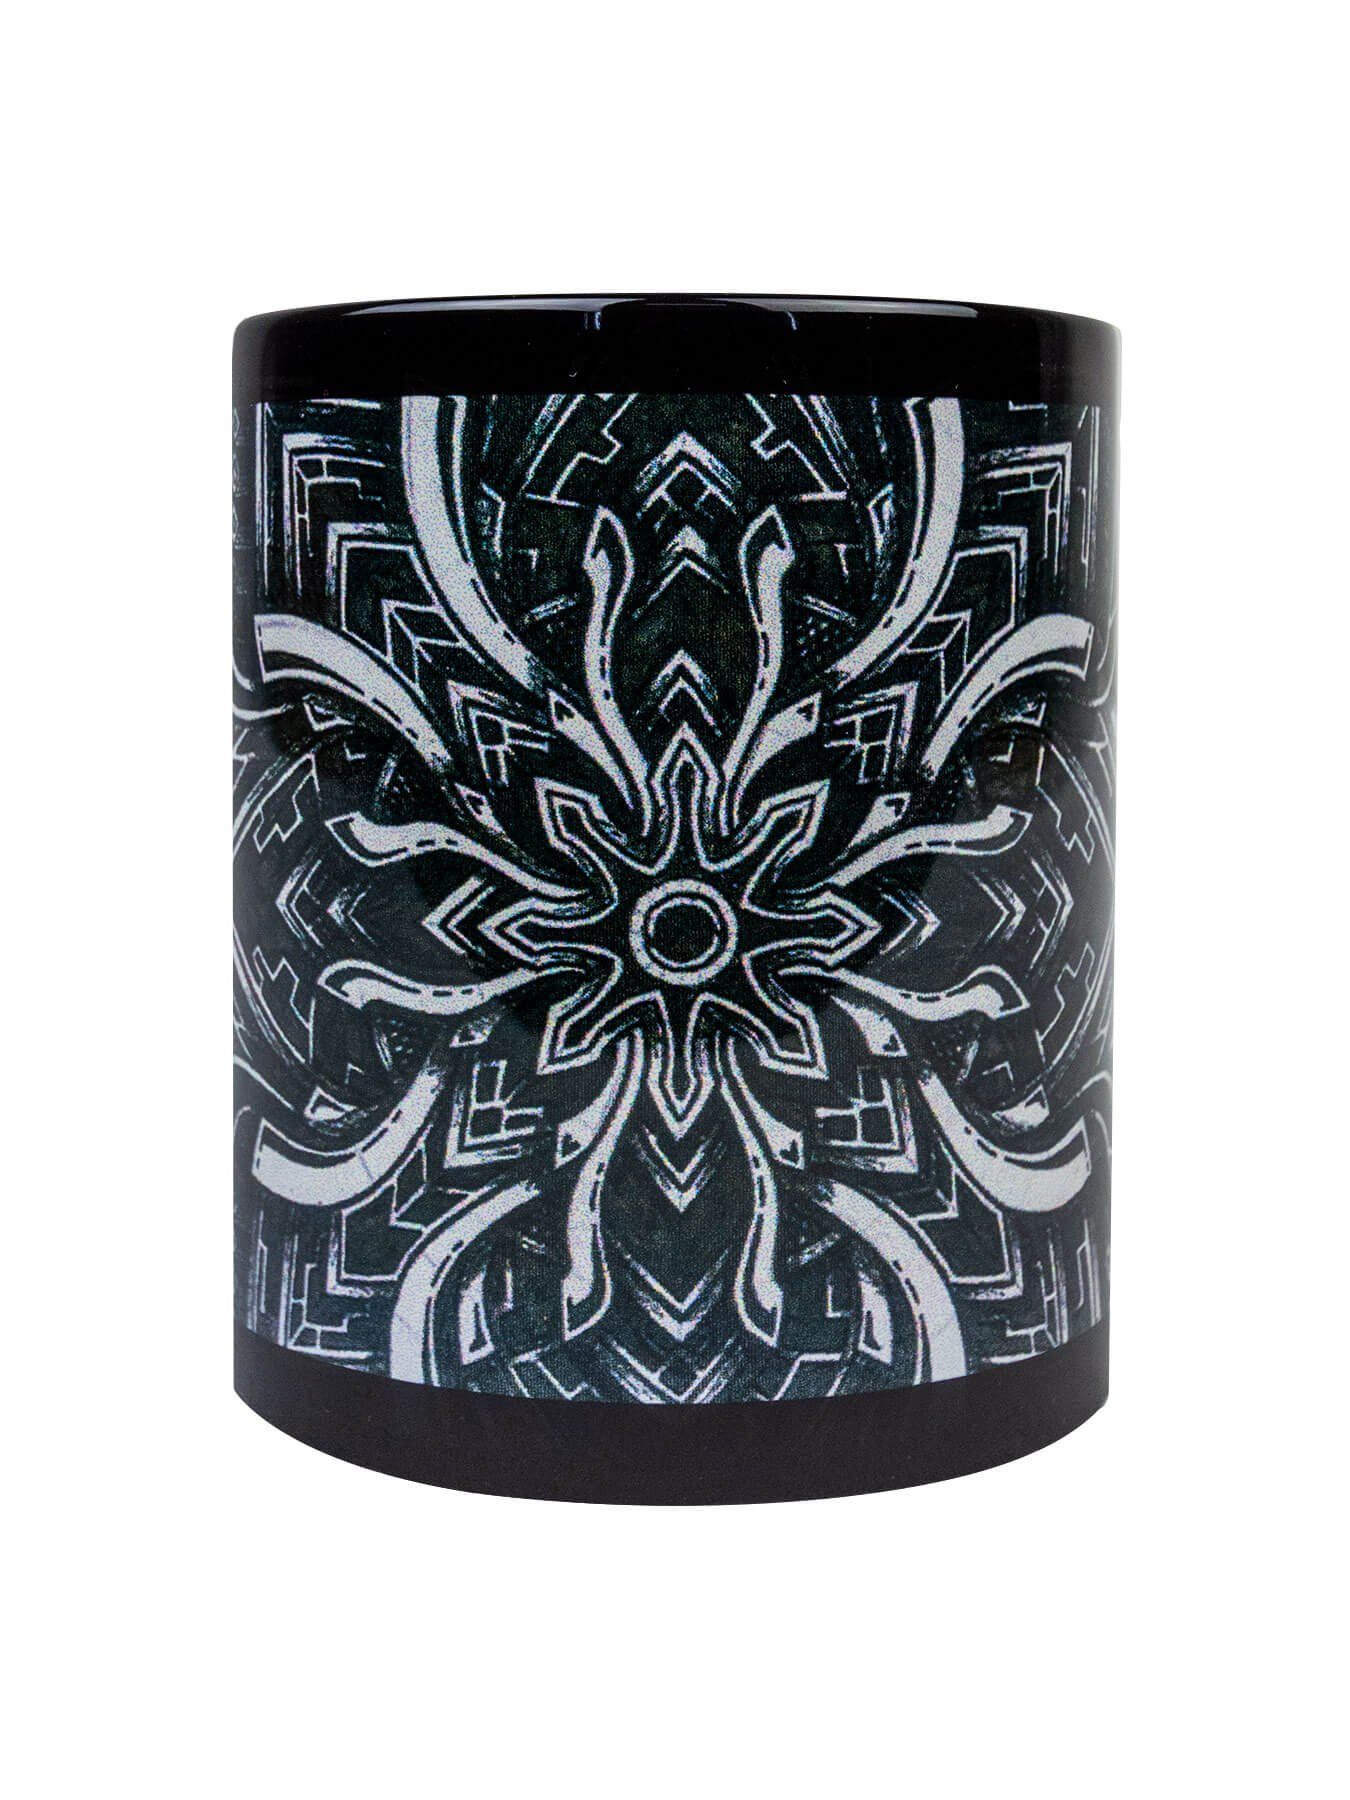 Fluo Keramik, Motiv Schwarzlicht PSYWORK Neon Cup UV-aktiv, Portal", "Dark unter leuchtet Tasse Tasse